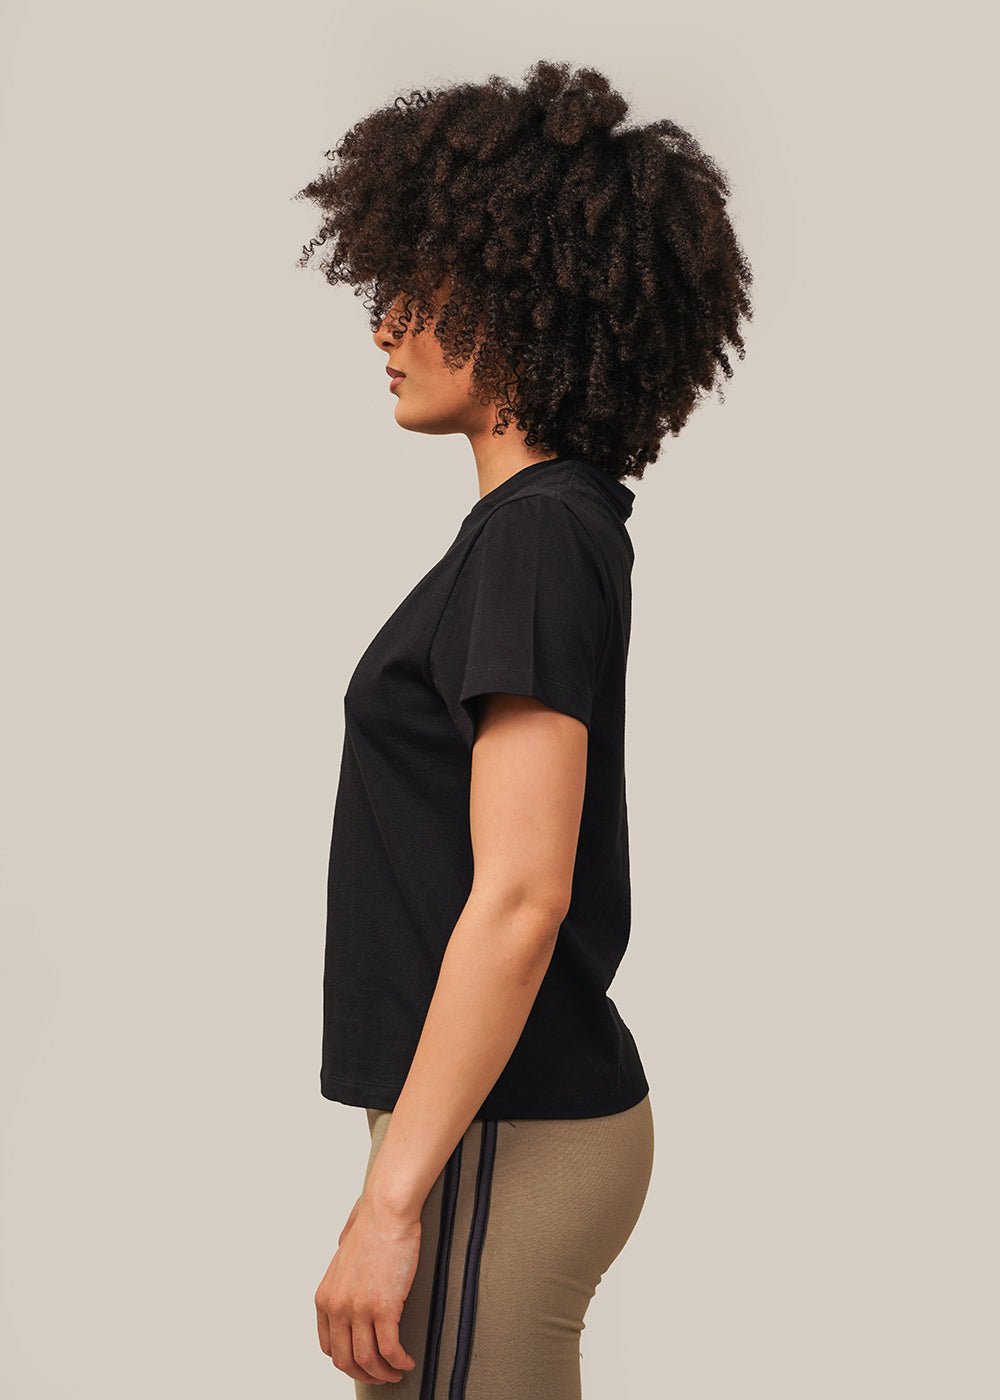 AMOMENTO Black Basic T-Shirt - New Classics Studios Sustainable Ethical Fashion Canada